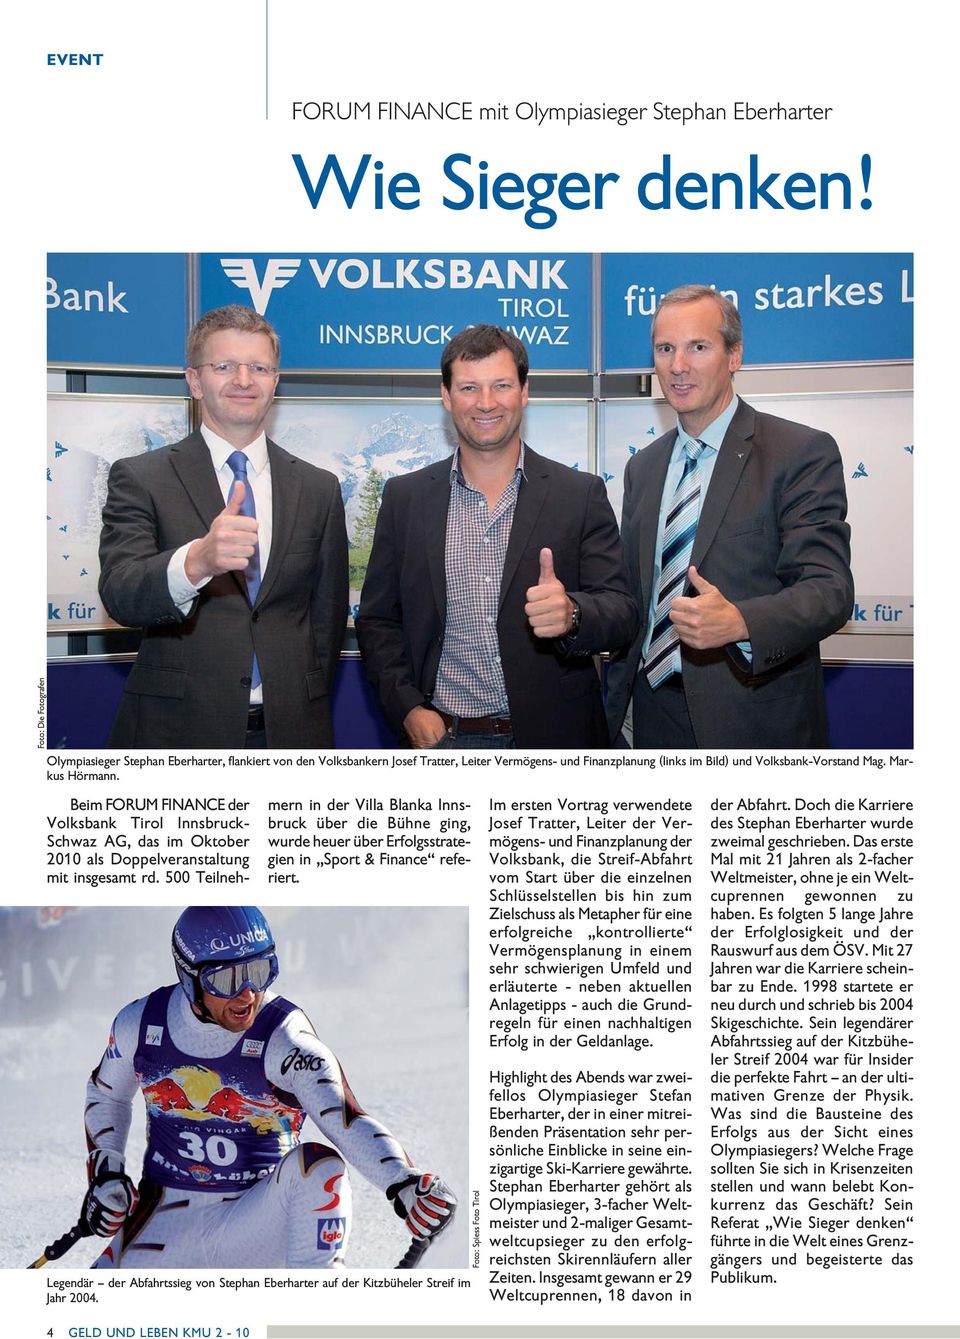 Beim FORUM FINANCE der Voksbank Tiro Innsbruck- Schwaz AG, das im Oktober 2010 as Doppeveranstatung mit insgesamt rd.